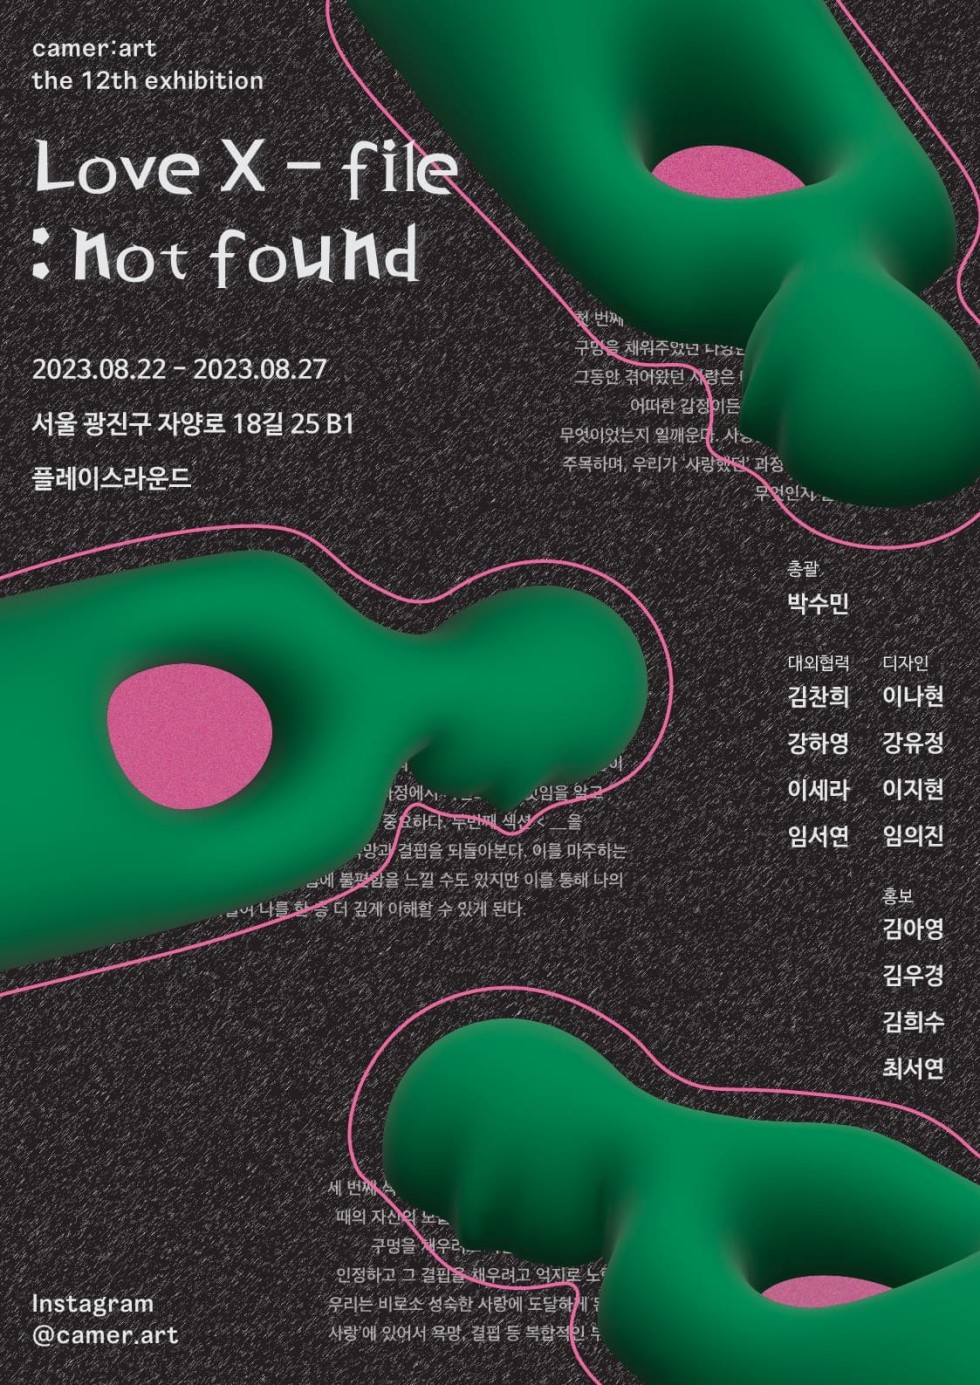 카메랄트의 열두 번째 기획 전시, &lt; Love X-flie : not found&gt; 展 포스터